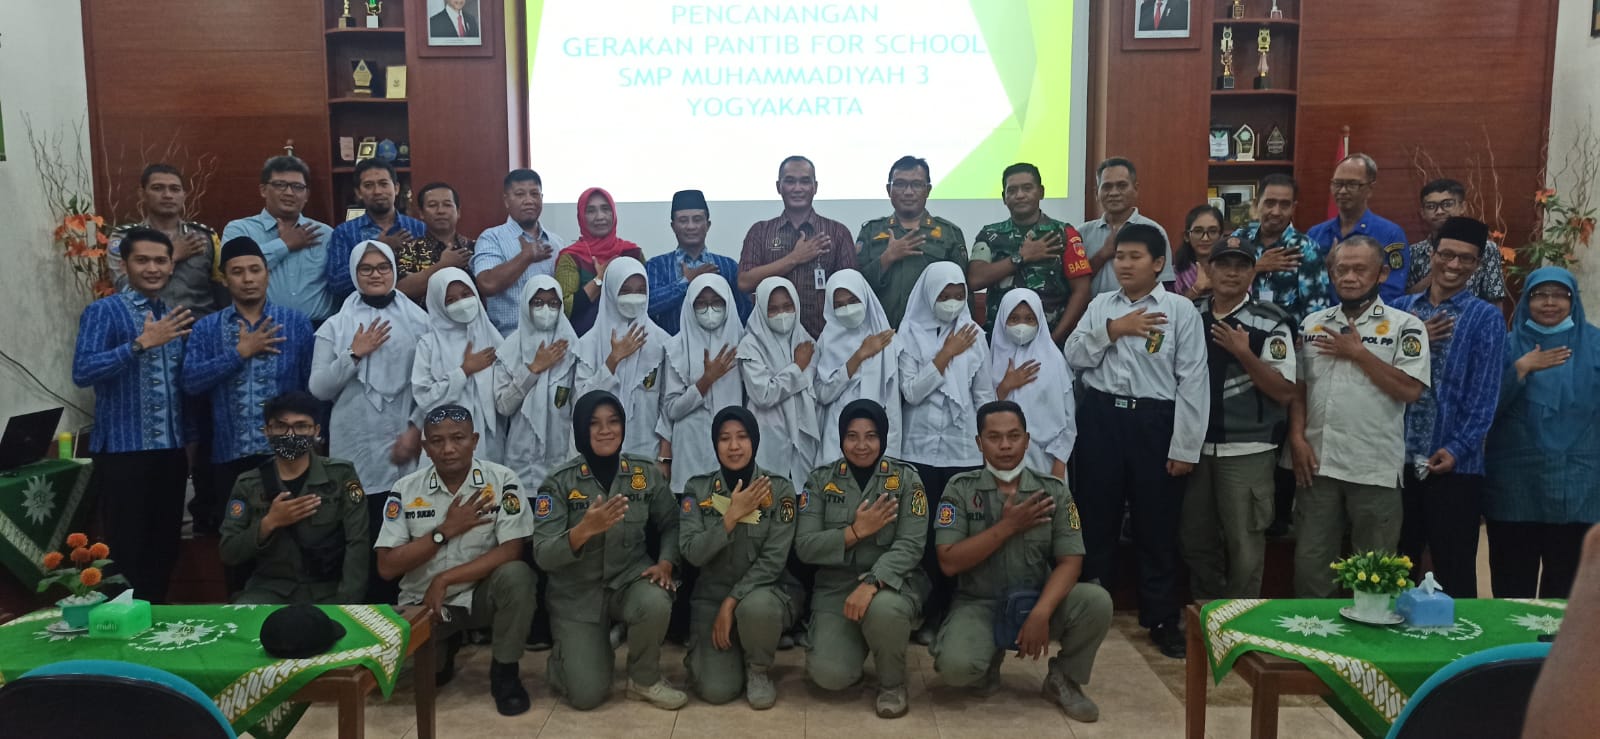 Pencanangan Gerakan Panca Tertib (Pantib For School) SMP Muhammadiyah 3 Yogyakarta 